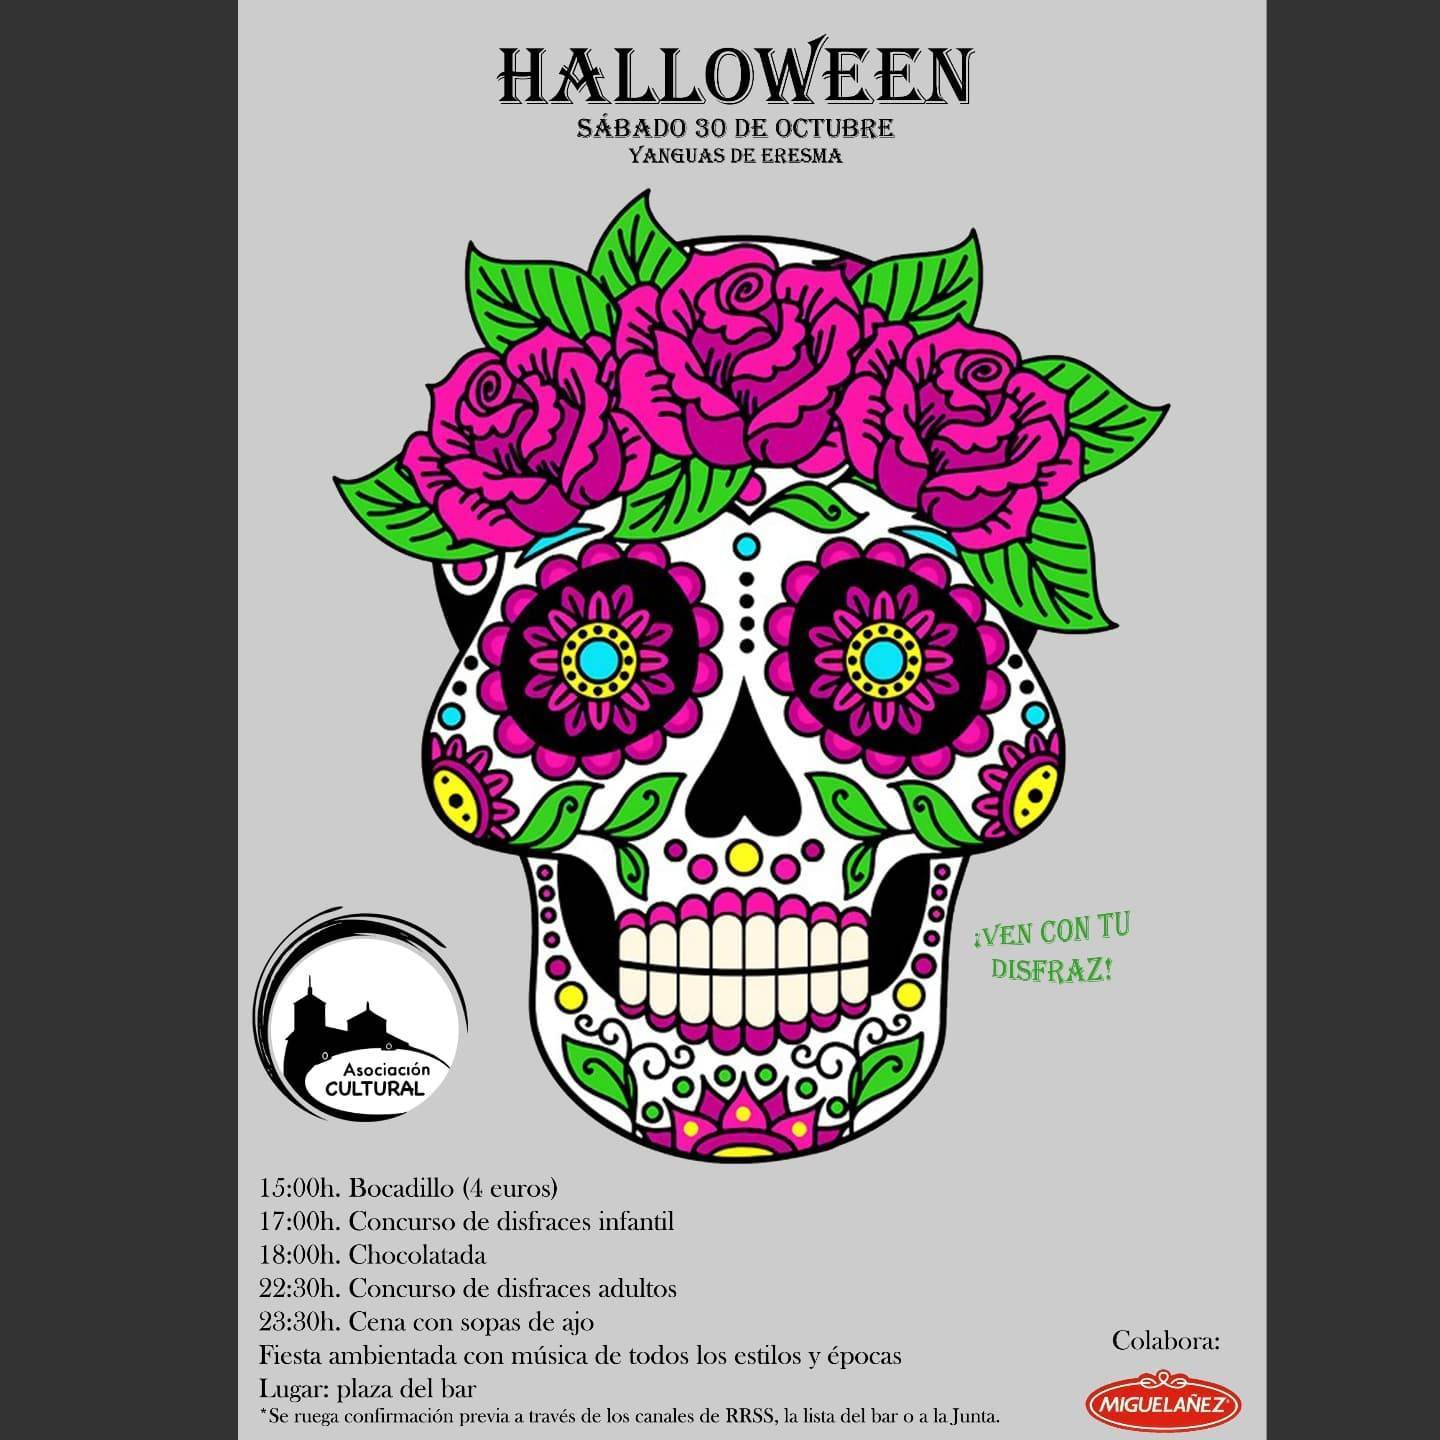 Halloween (2021) - Yanguas de Eresma (Segovia)